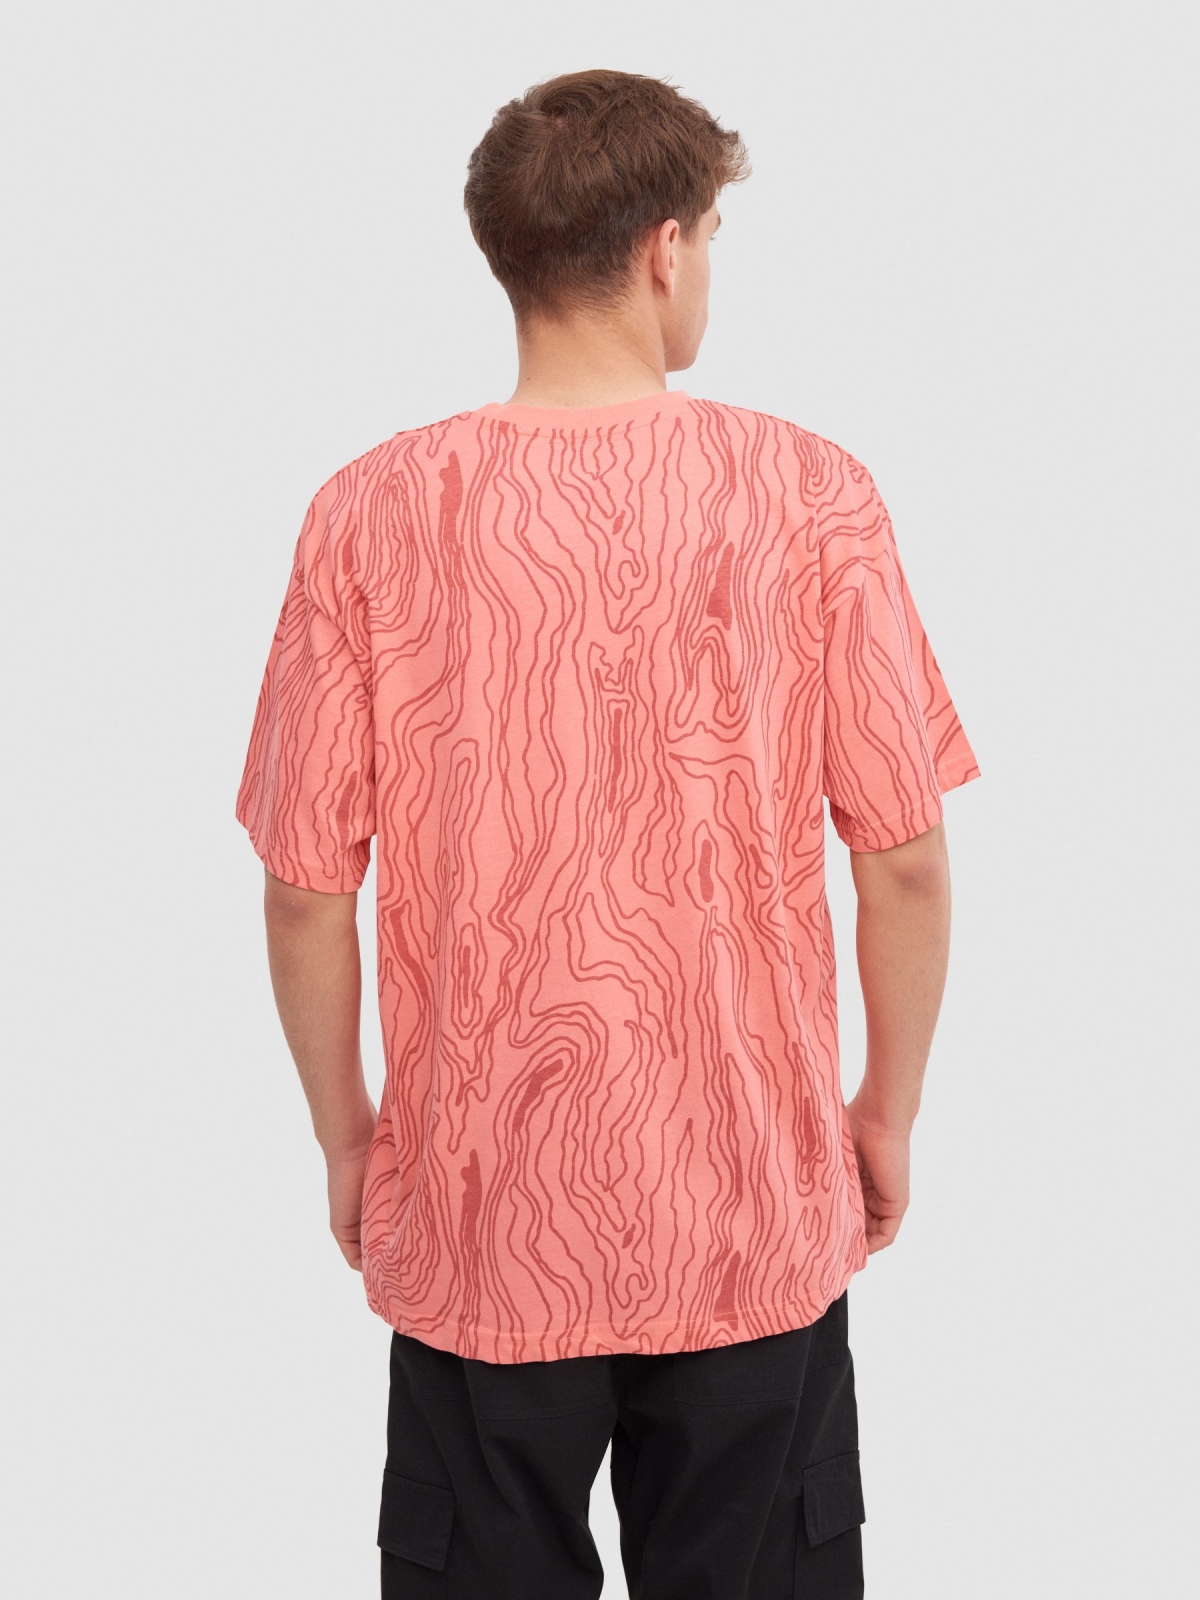 Camiseta allover waves rosa vista media trasera